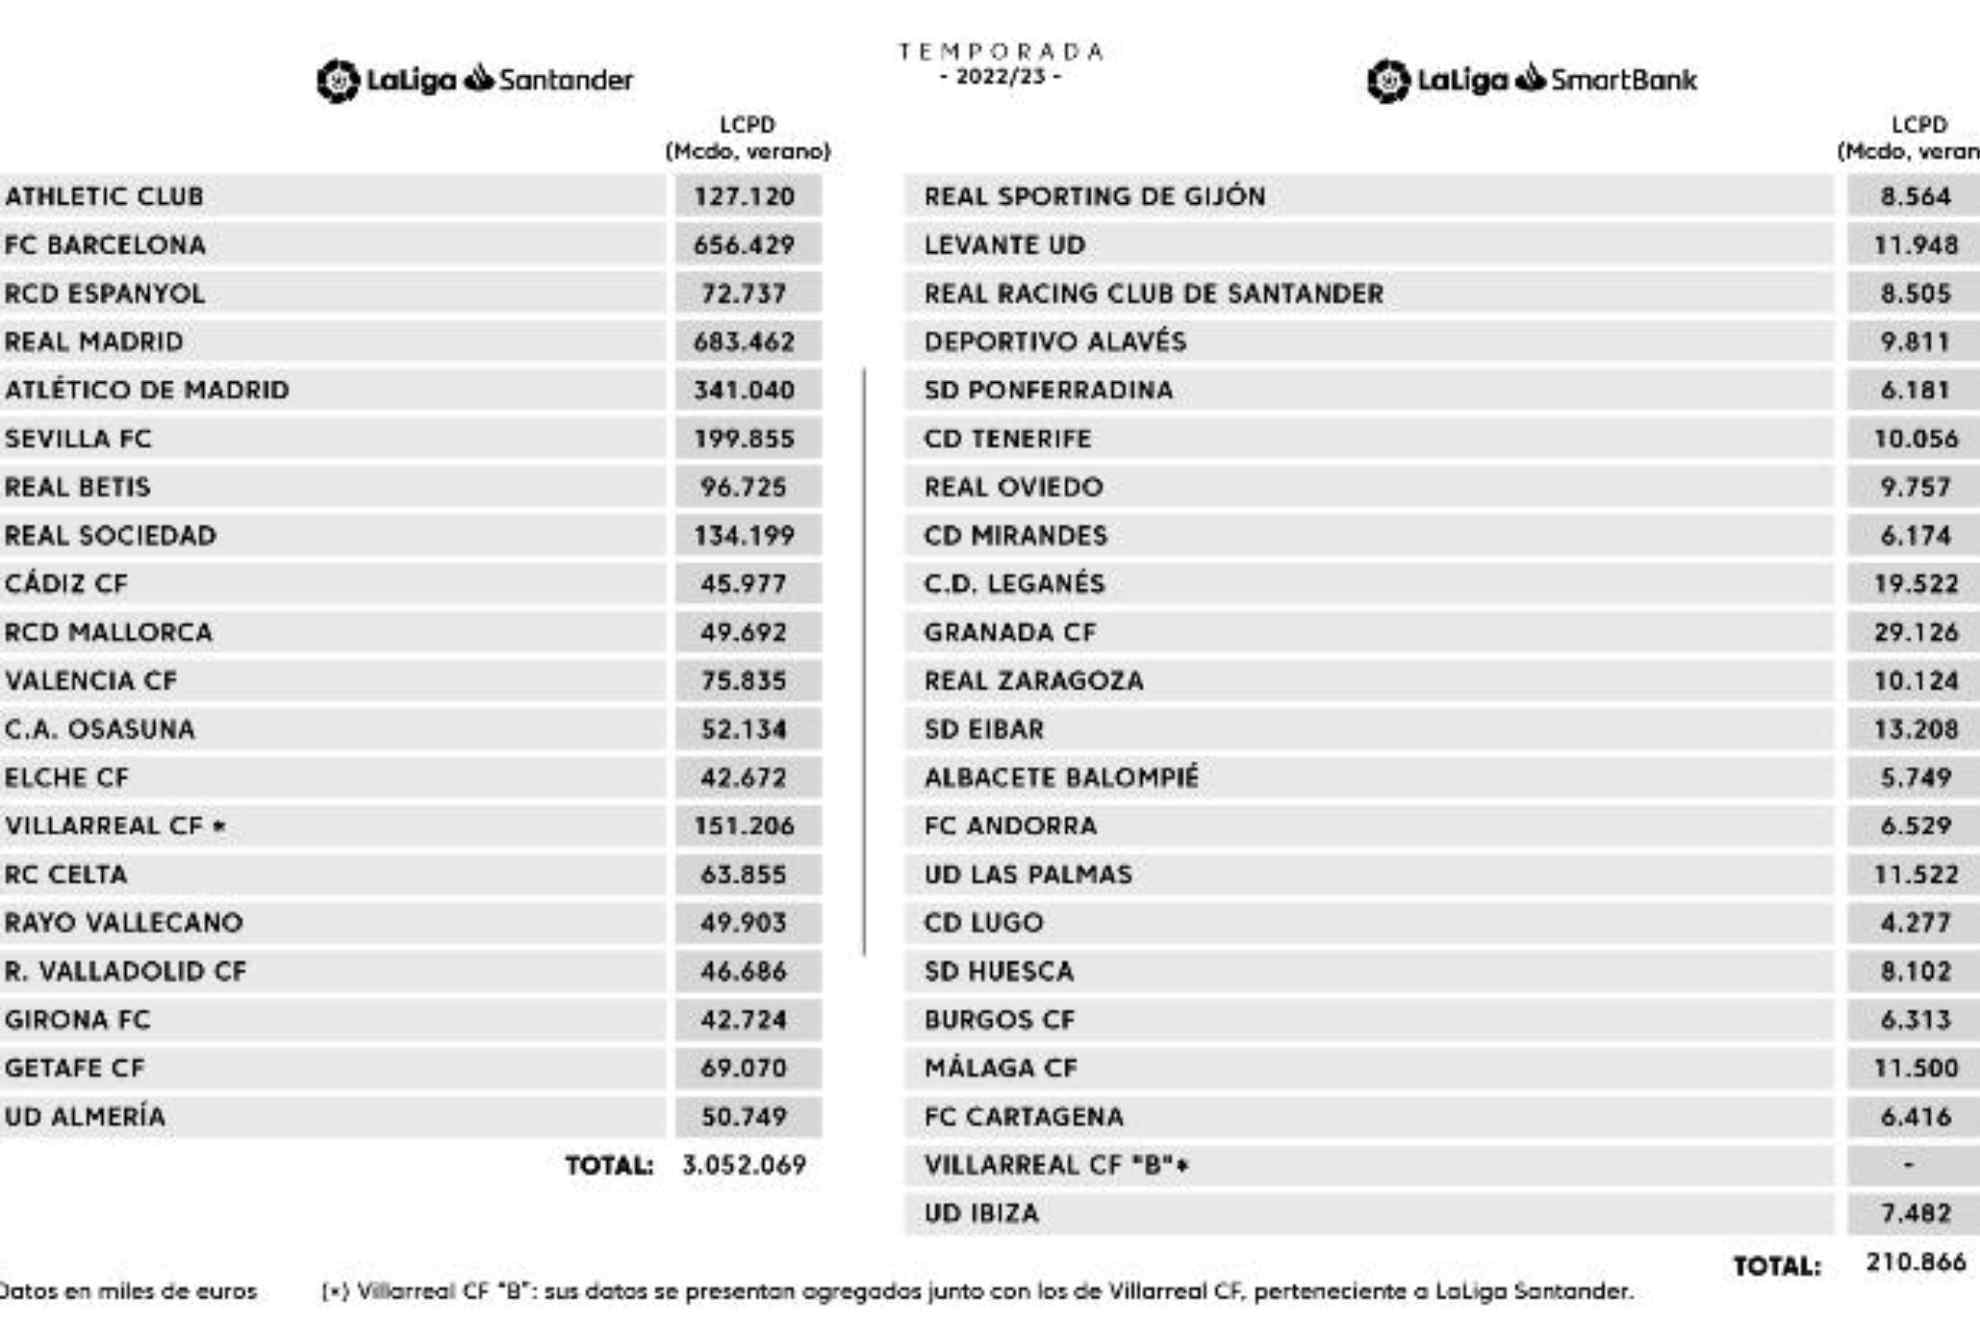 Los límites salariales de la 22-23: el Barcelona pasa de -144 millones a 656